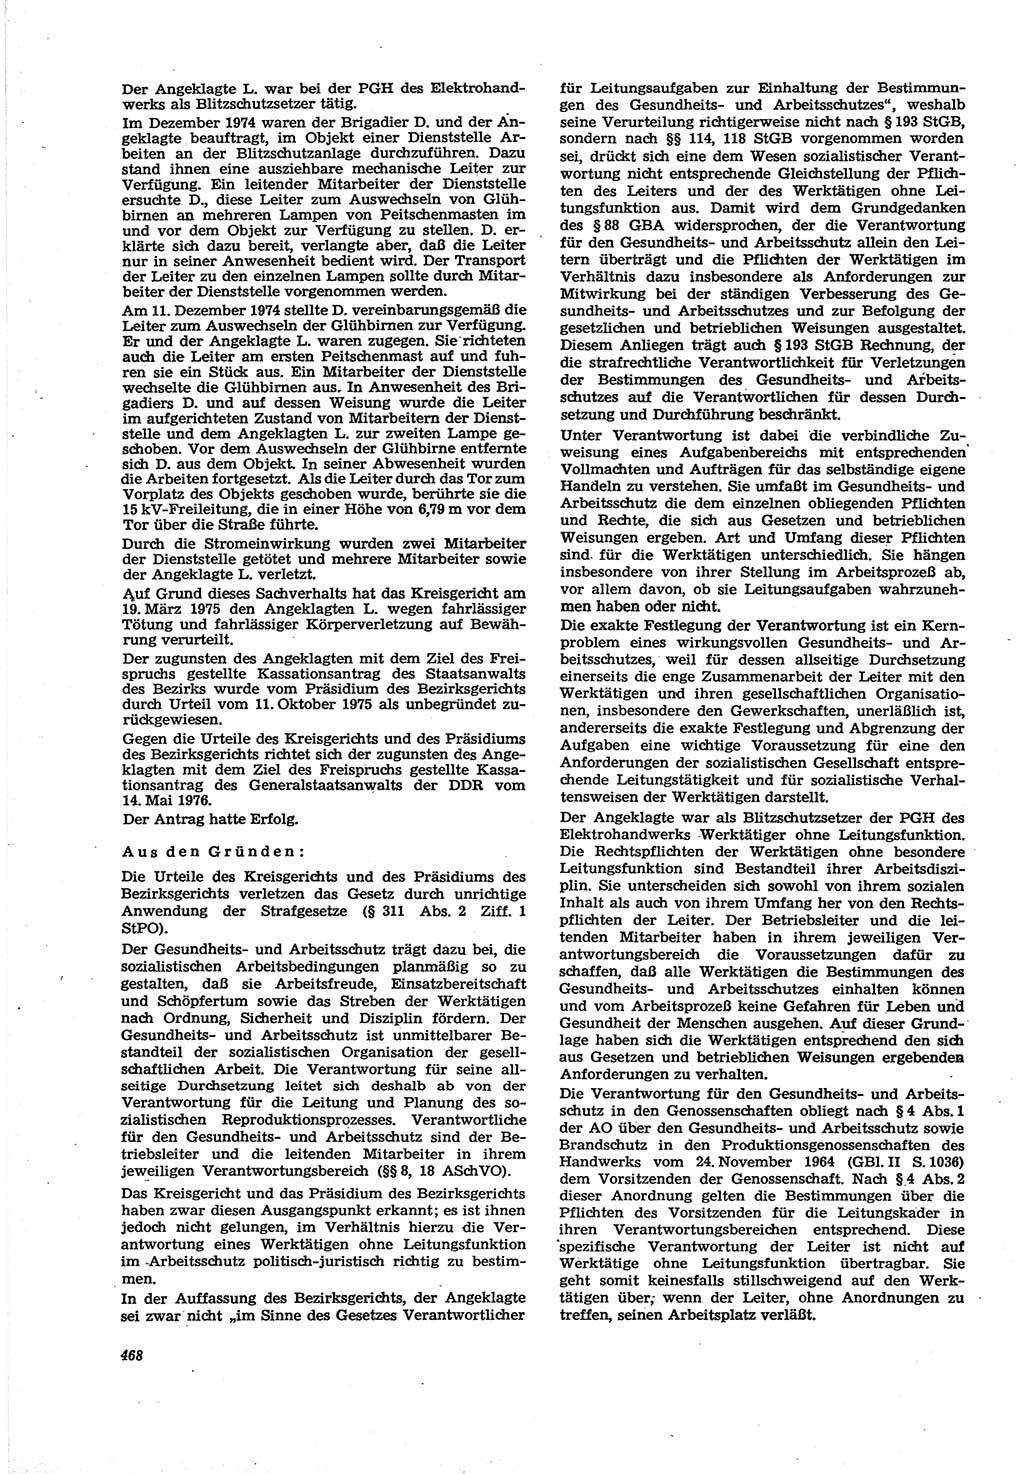 Neue Justiz (NJ), Zeitschrift für Recht und Rechtswissenschaft [Deutsche Demokratische Republik (DDR)], 30. Jahrgang 1976, Seite 468 (NJ DDR 1976, S. 468)